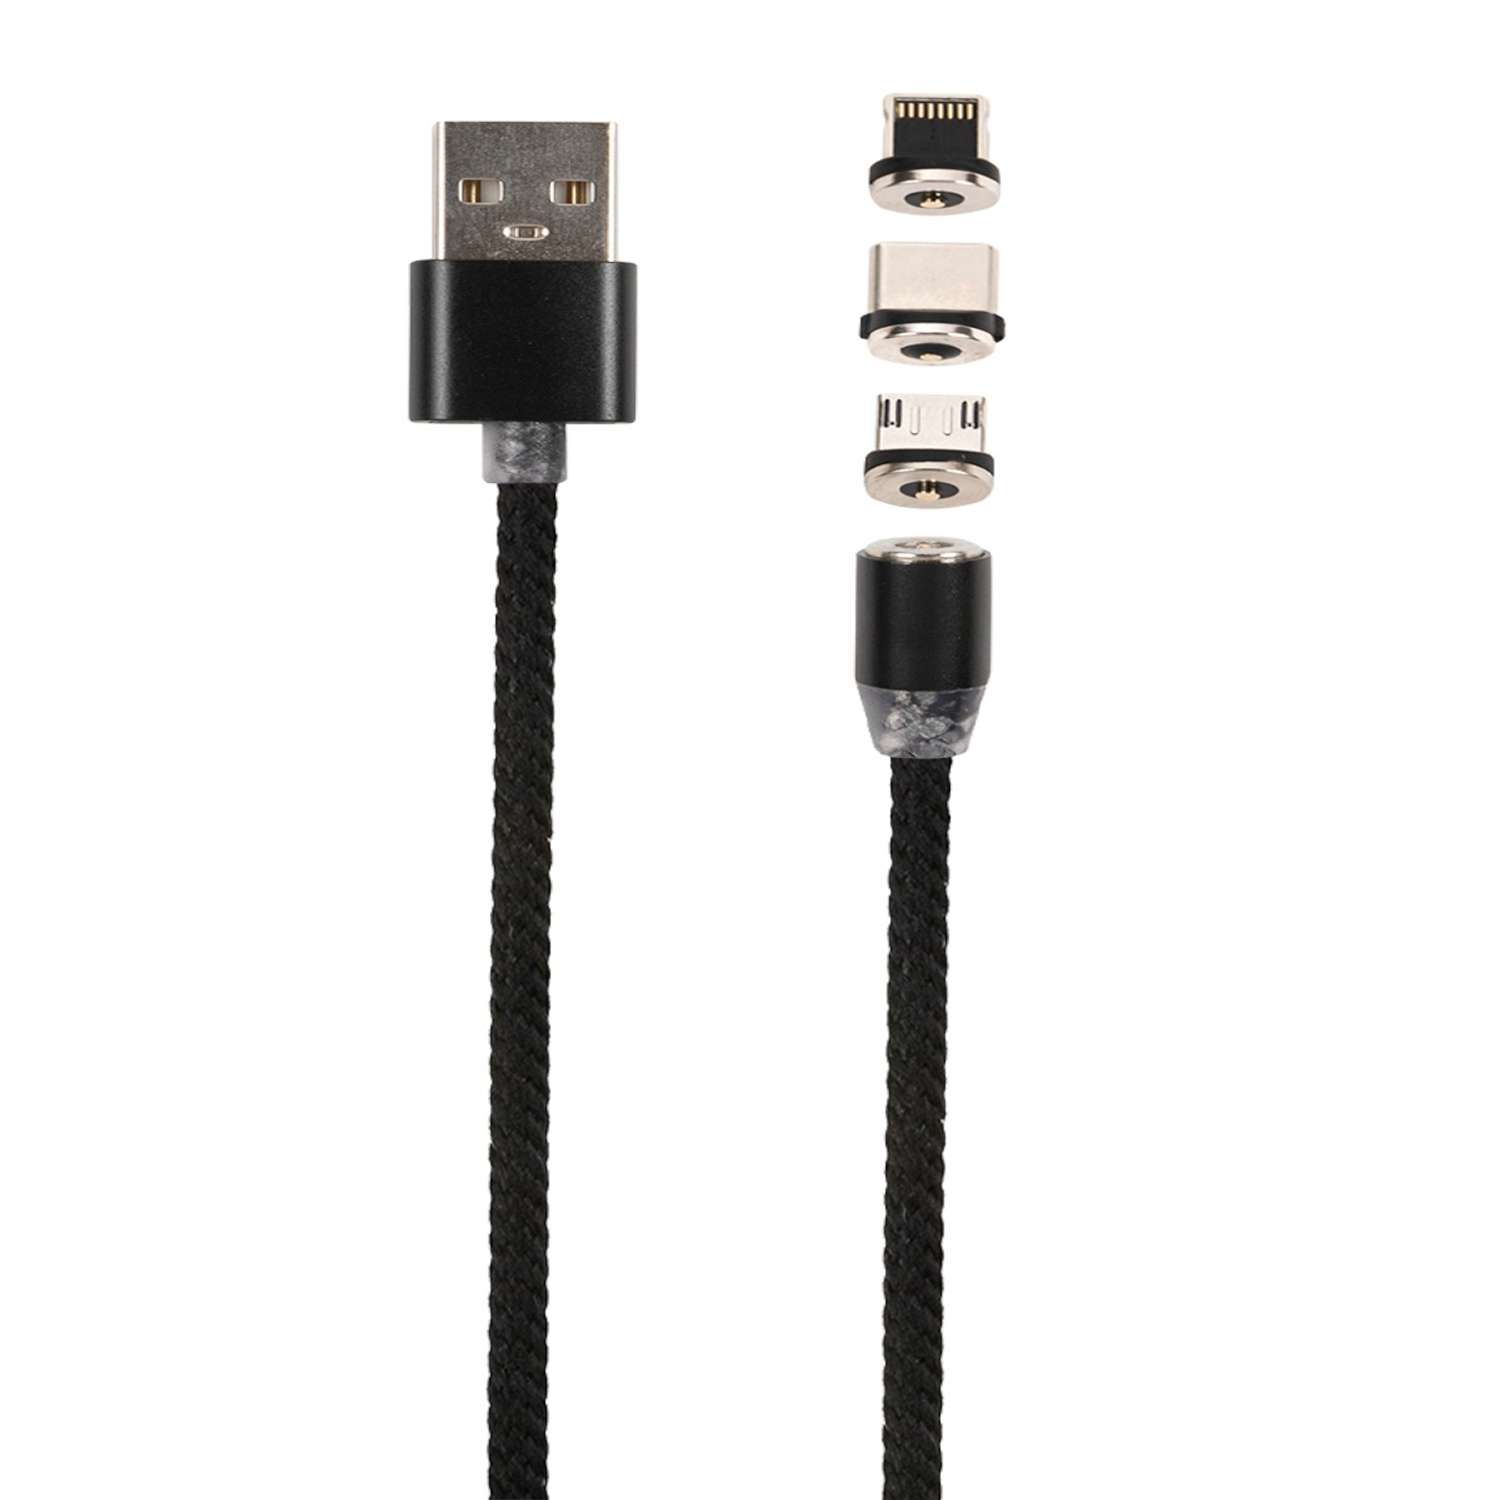 Дата-кабель mObility магнитный USB -Type-C/8 - pin/micro USB (3 в 1) нейлоновая оплетка черный - фото 2